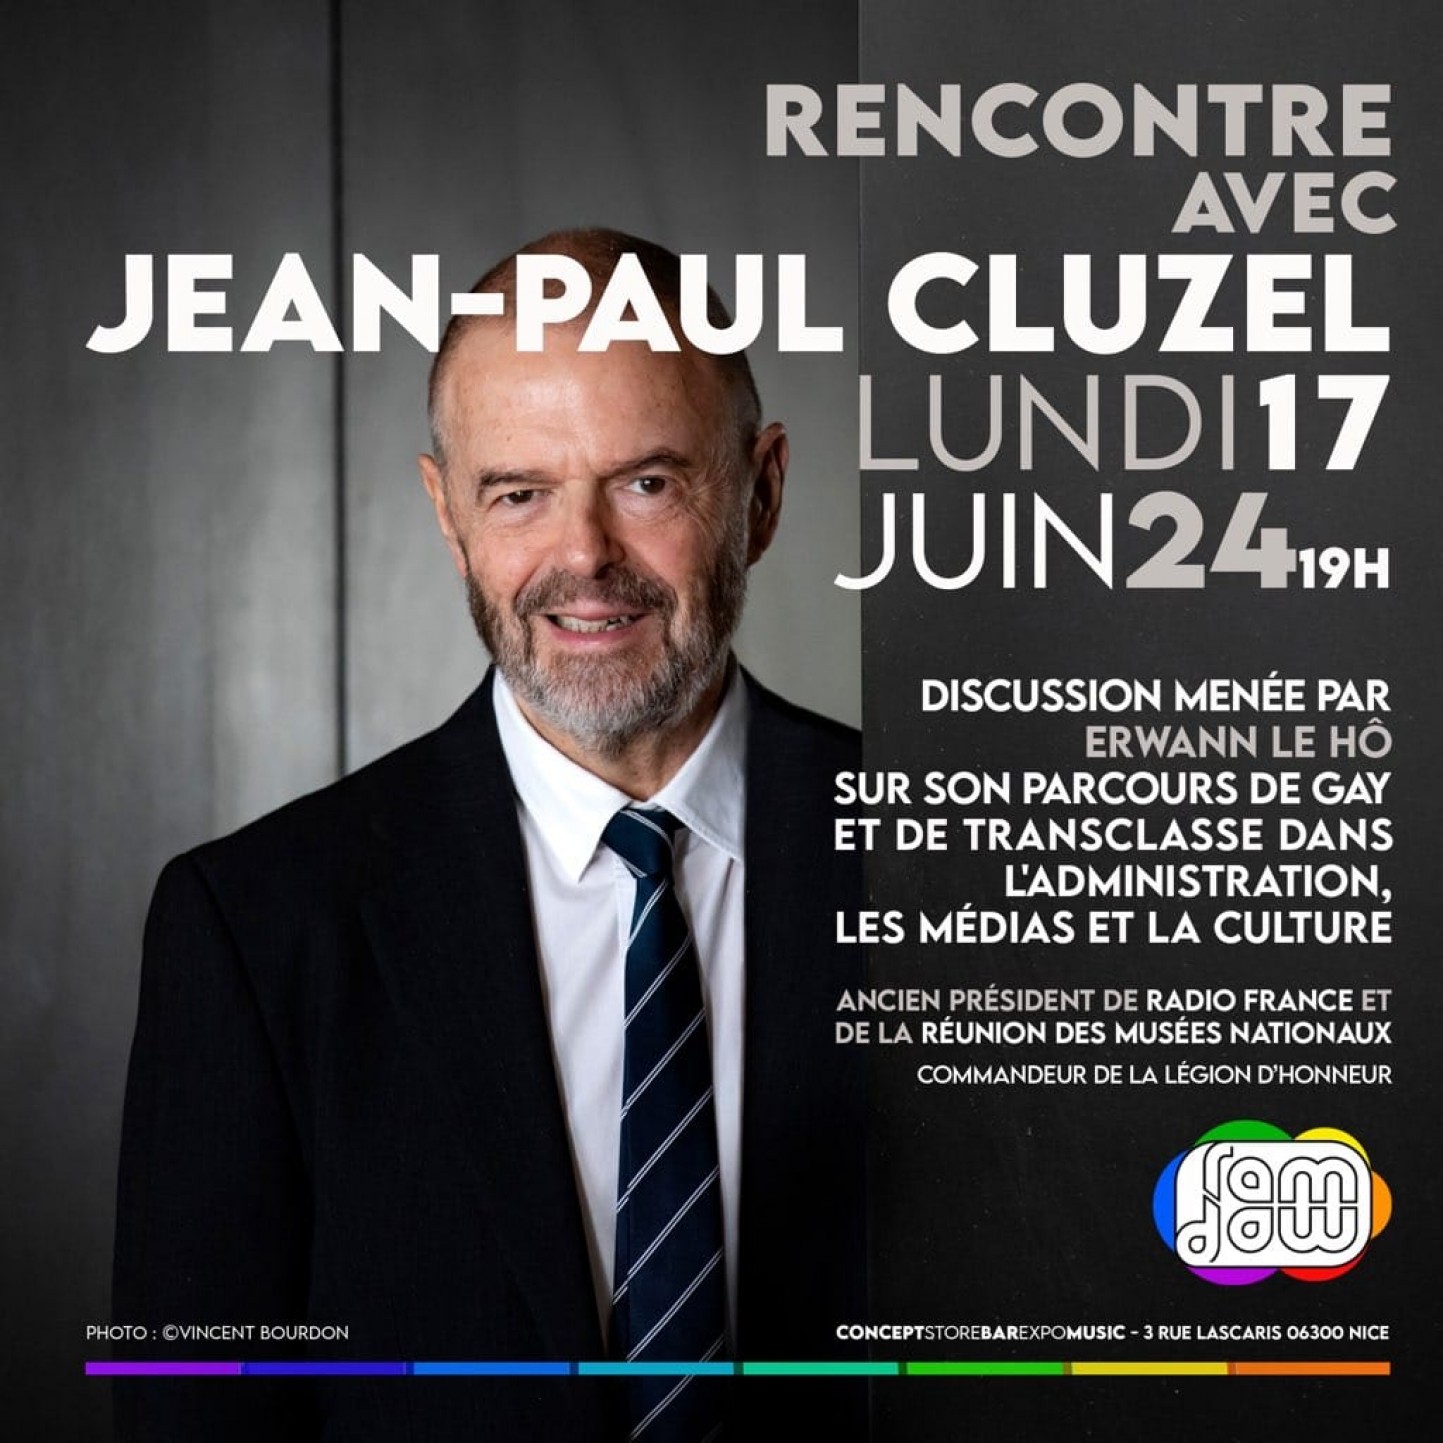 Rencontre avec Jean-Paul Cluzel